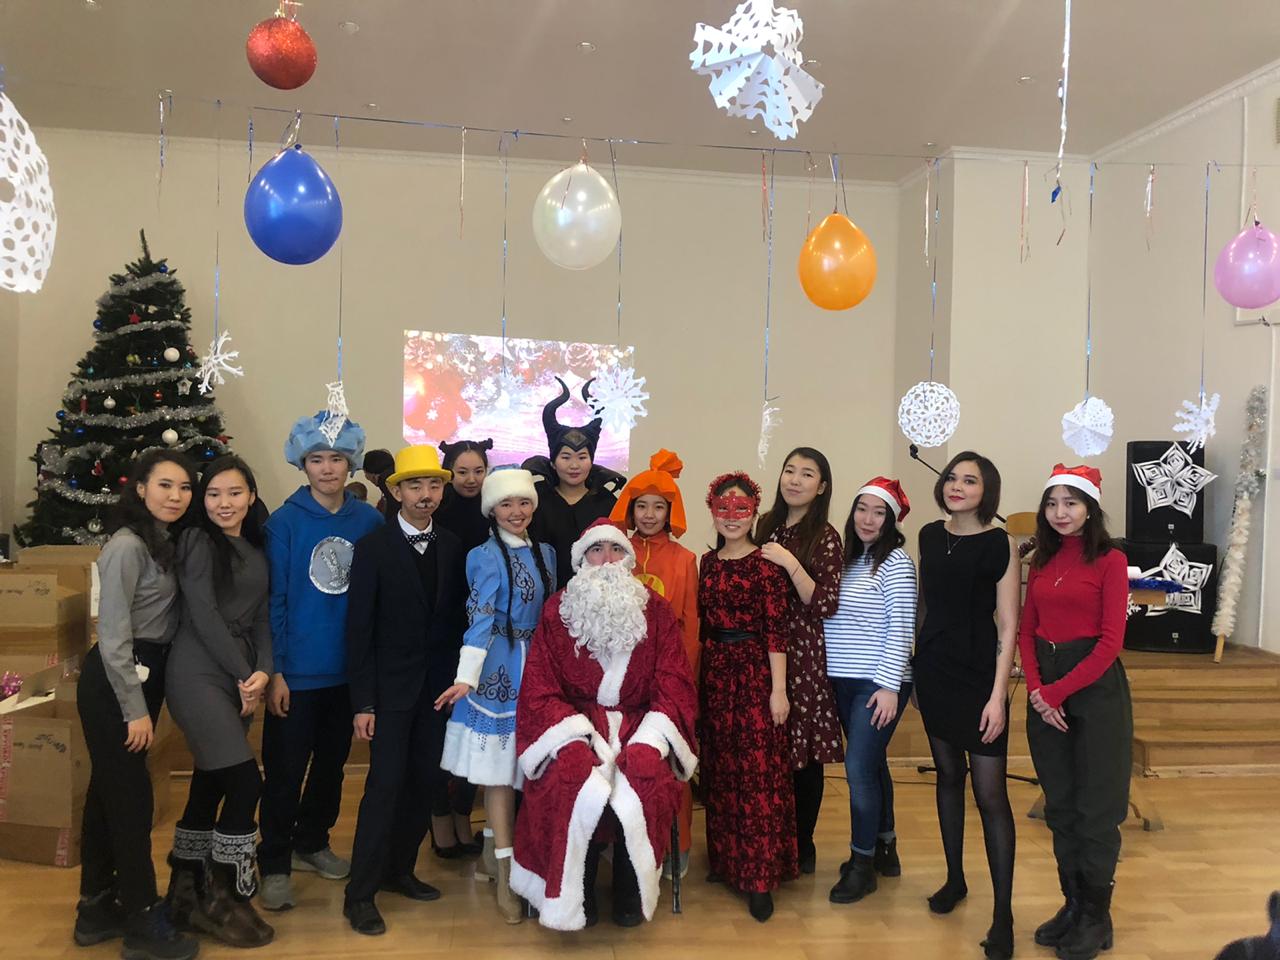 13 декабря 2019 г. преподаватели и студенты кафедры социальной педагогики провели традиционный городской новогодний утренник для детей с ограниченными возможностями здоровья.